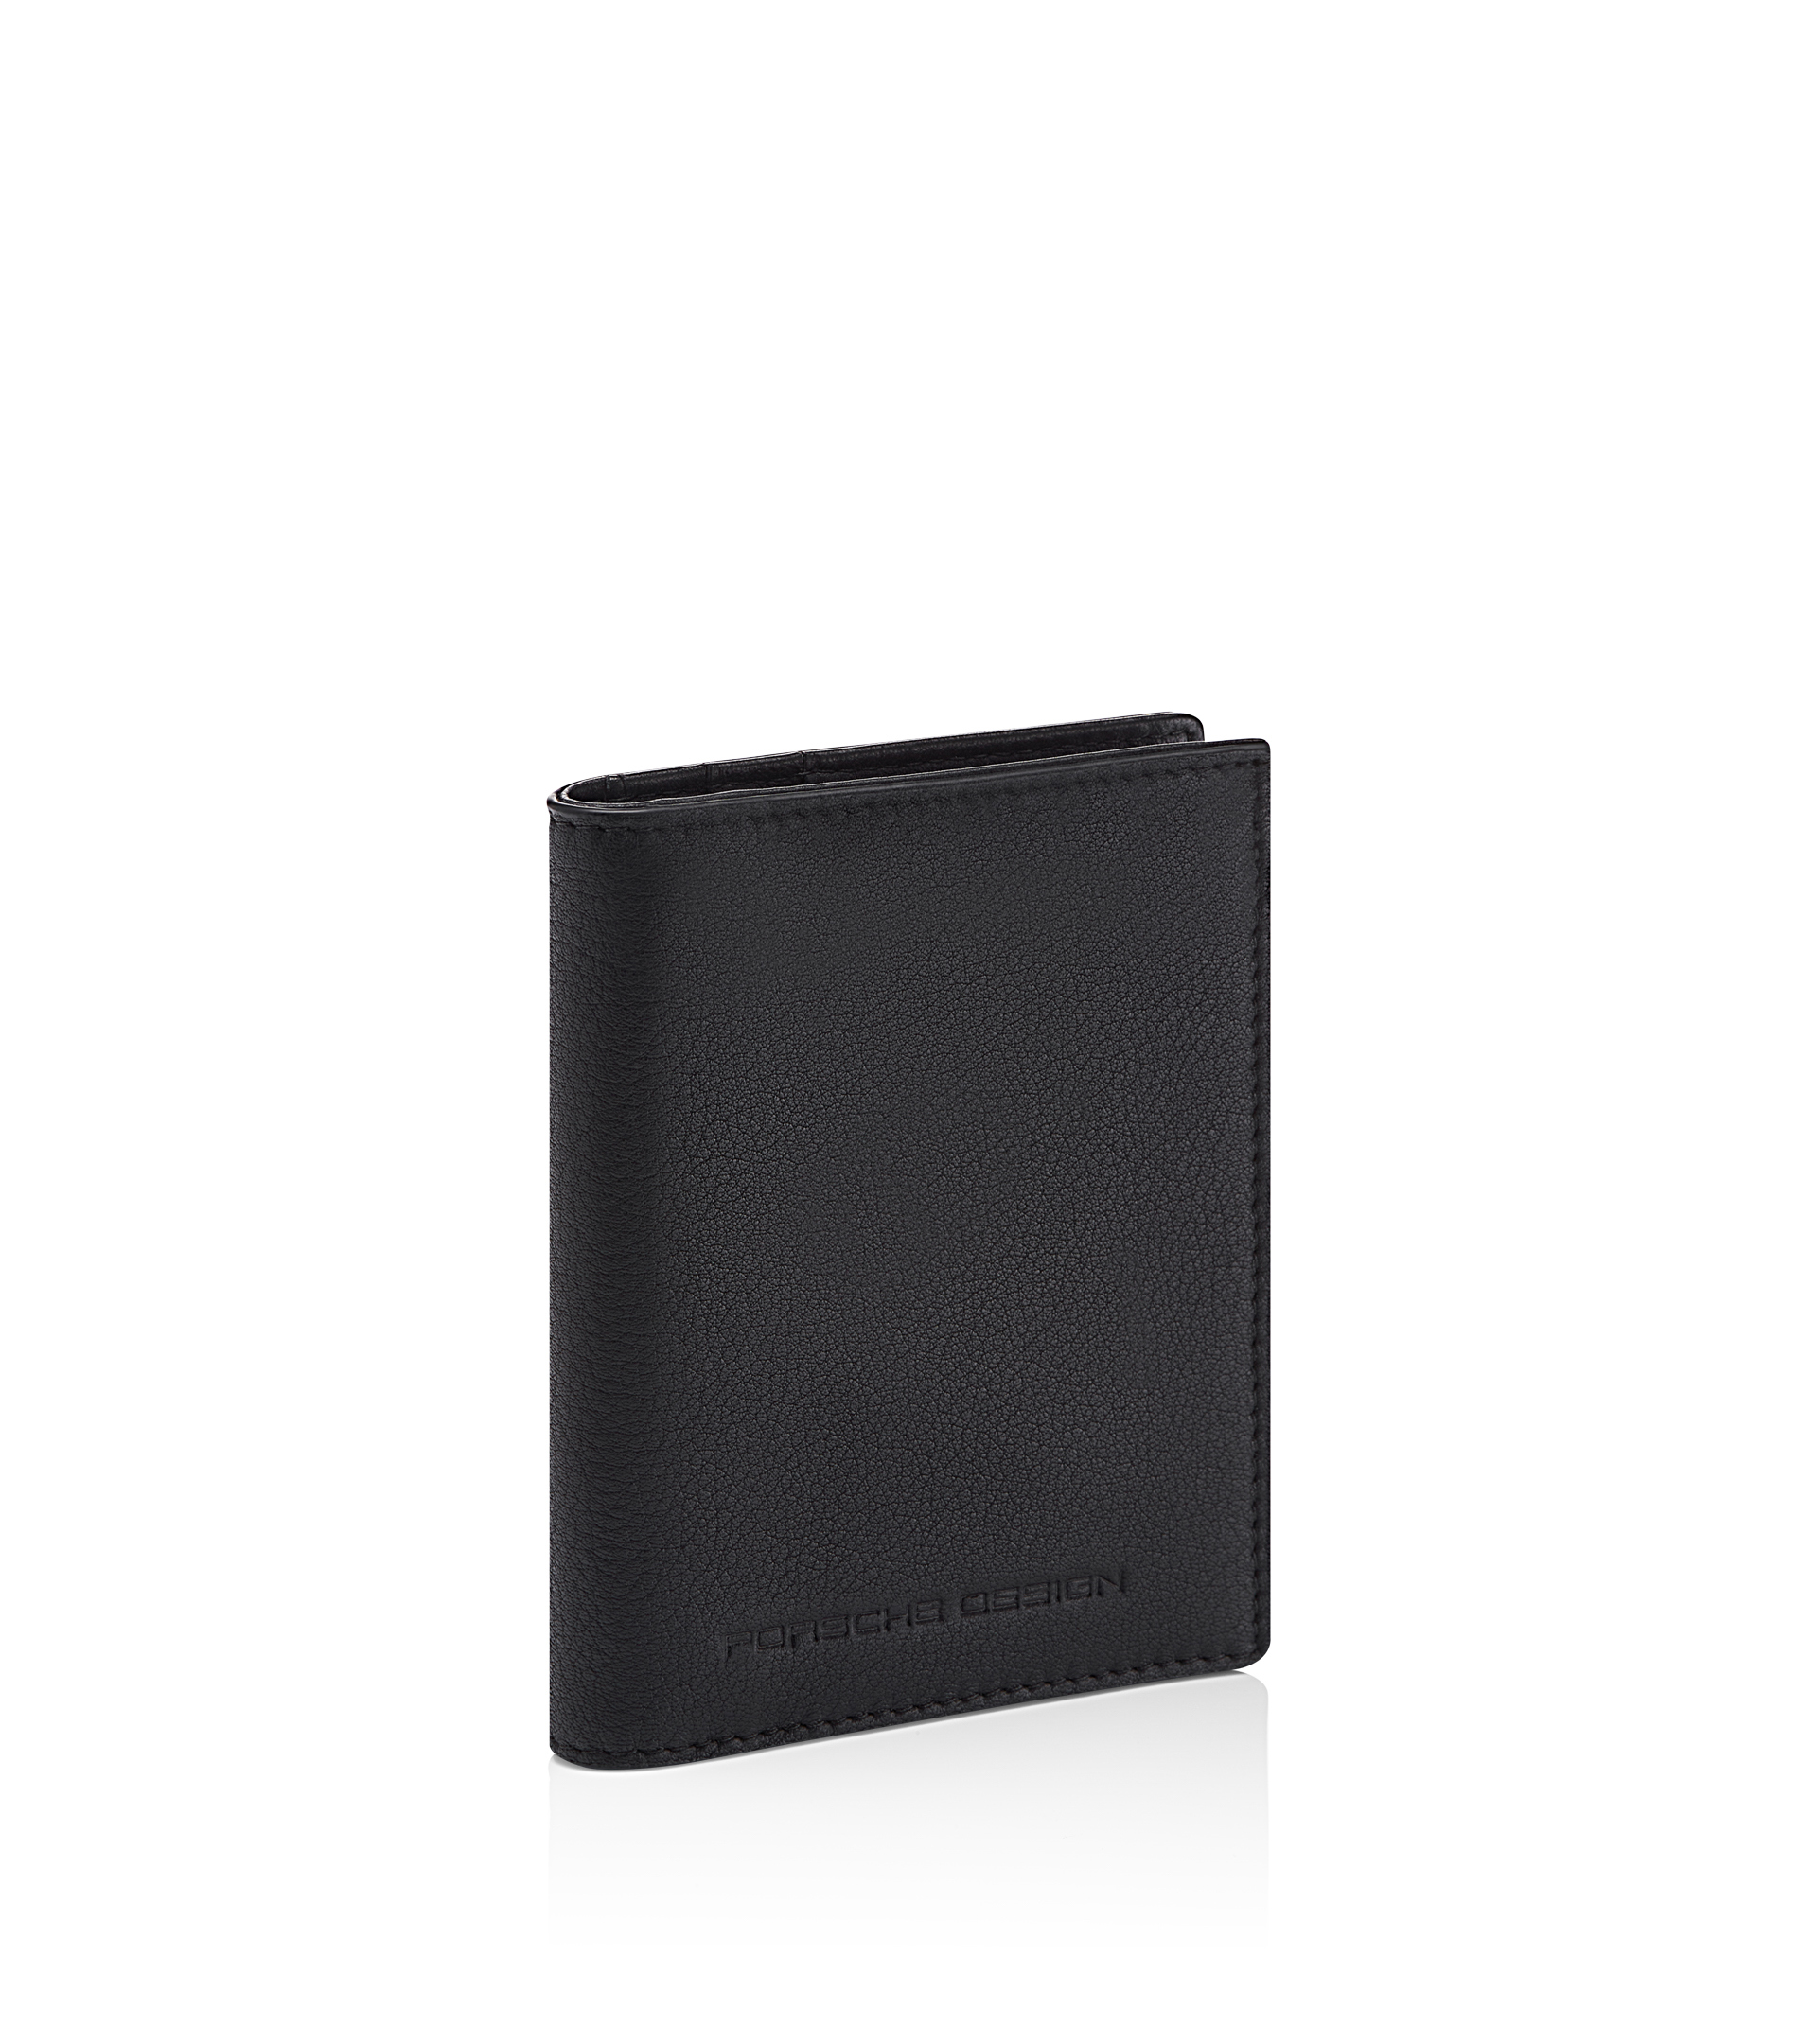 Replica Louis Vuitton Monogram Titanium Men's Wallets for Sale